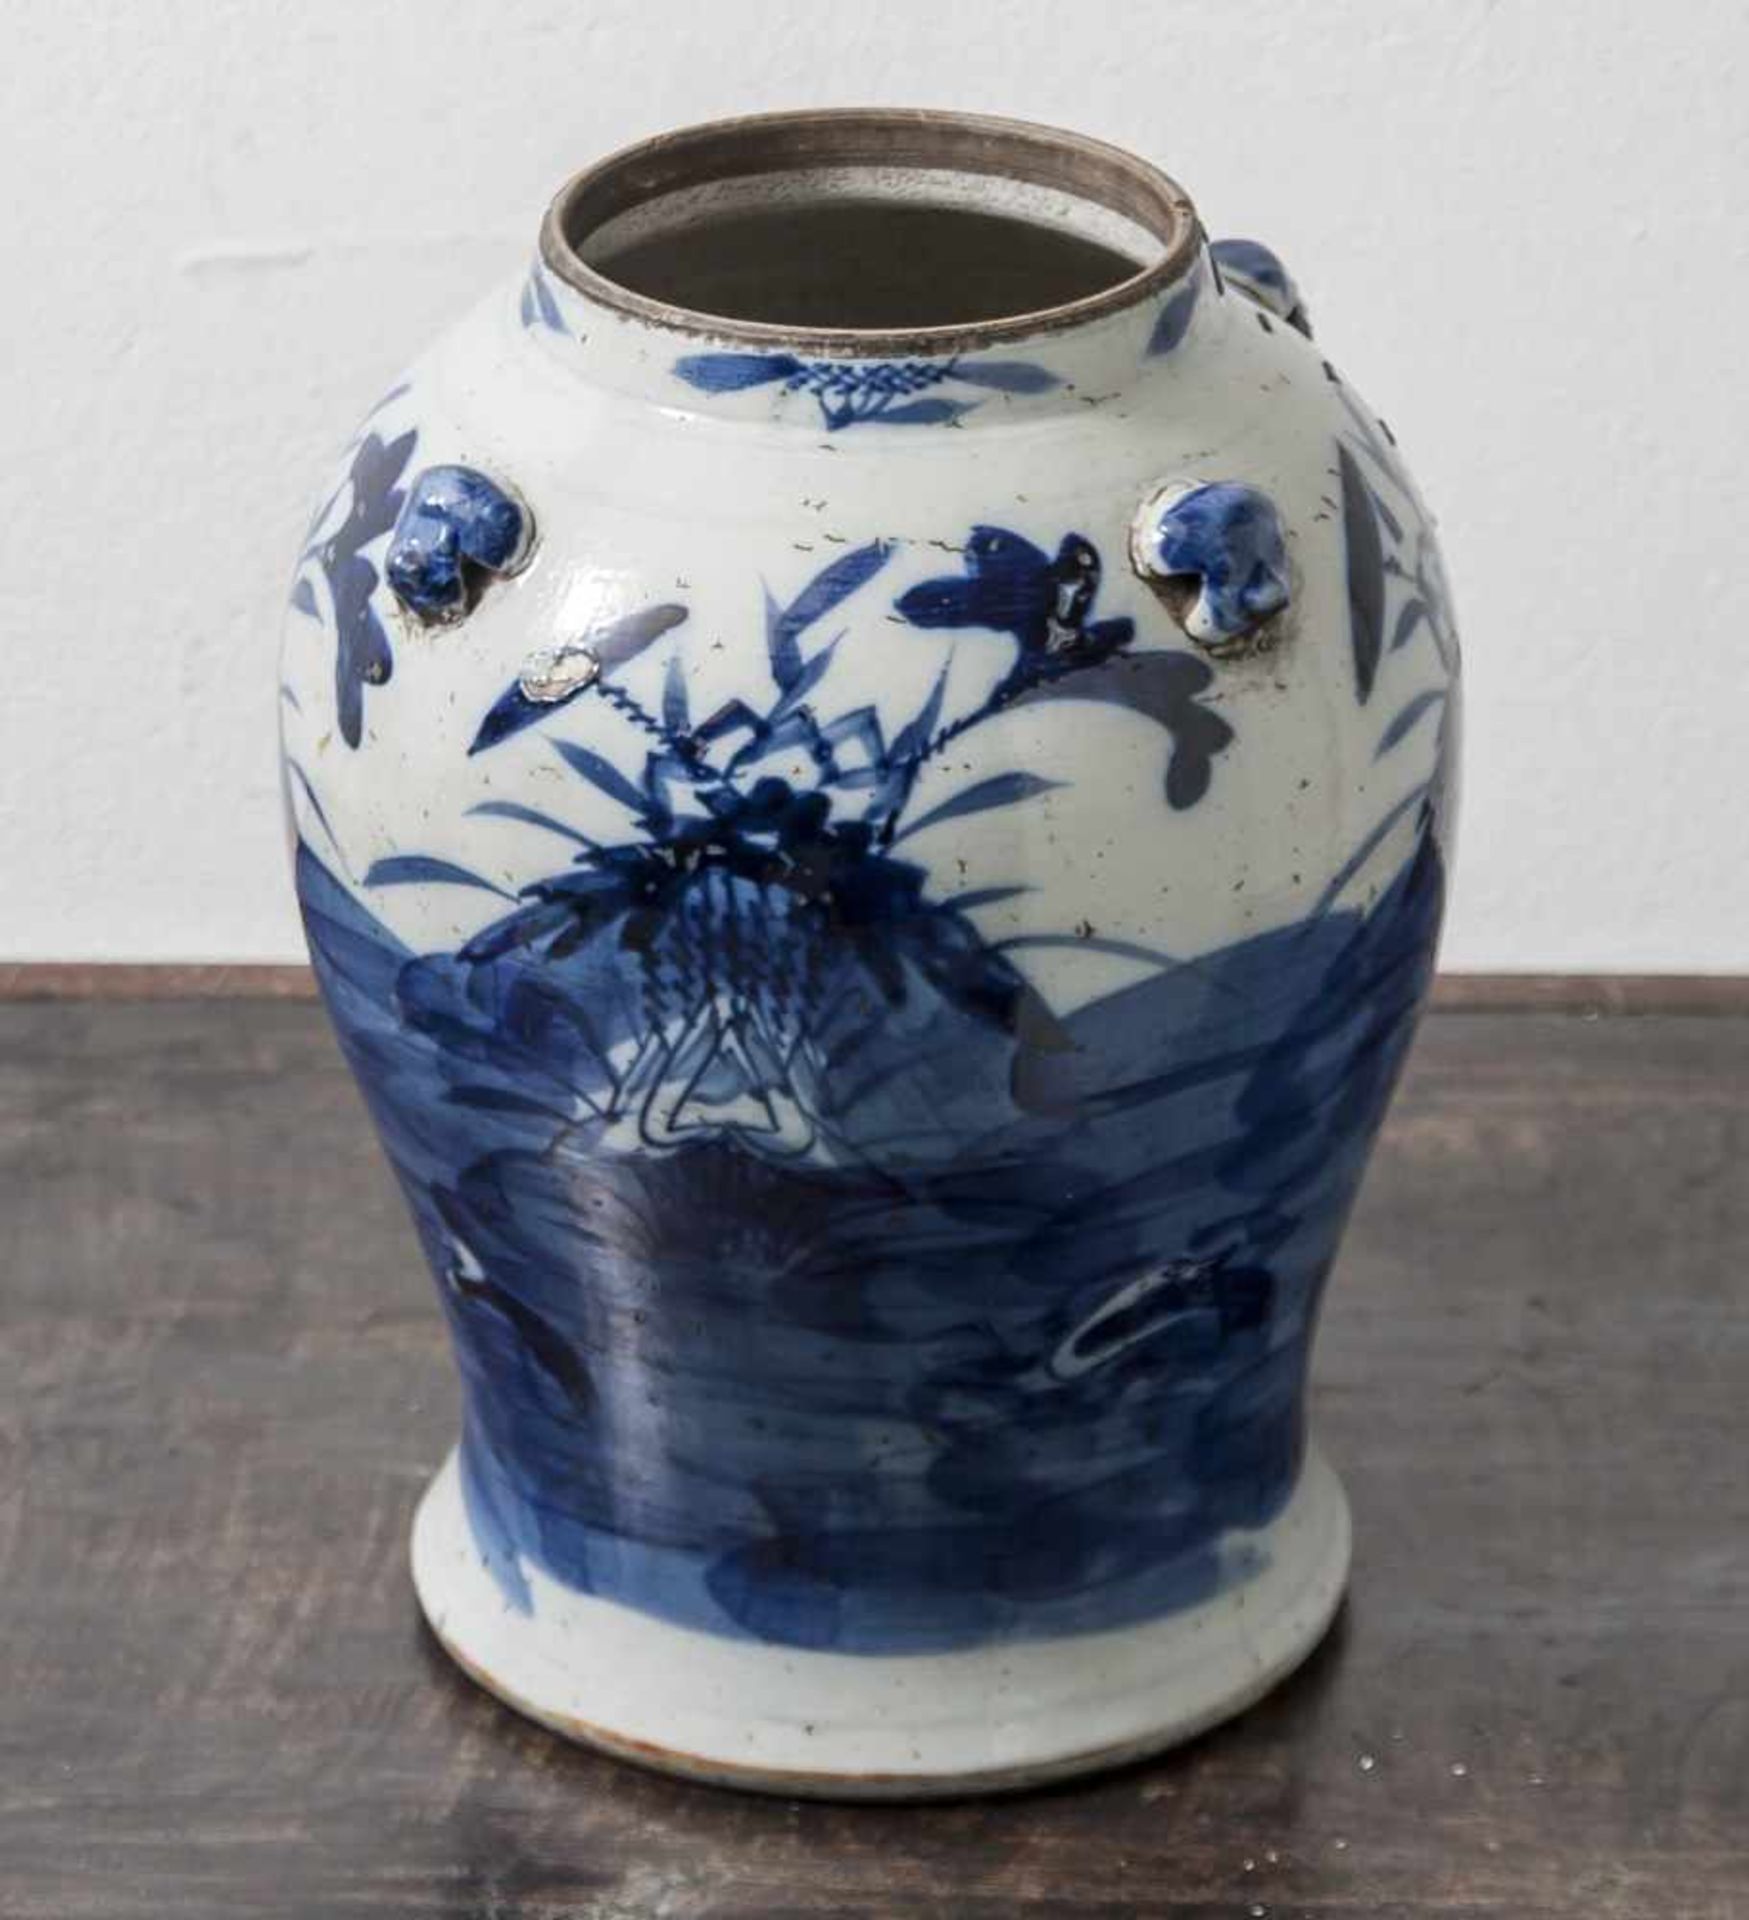 Schultertopf, wohl für Ingwer, China, (17./18. Jahrhundert), Porzellan, blaue Bemalung.Auf rundem